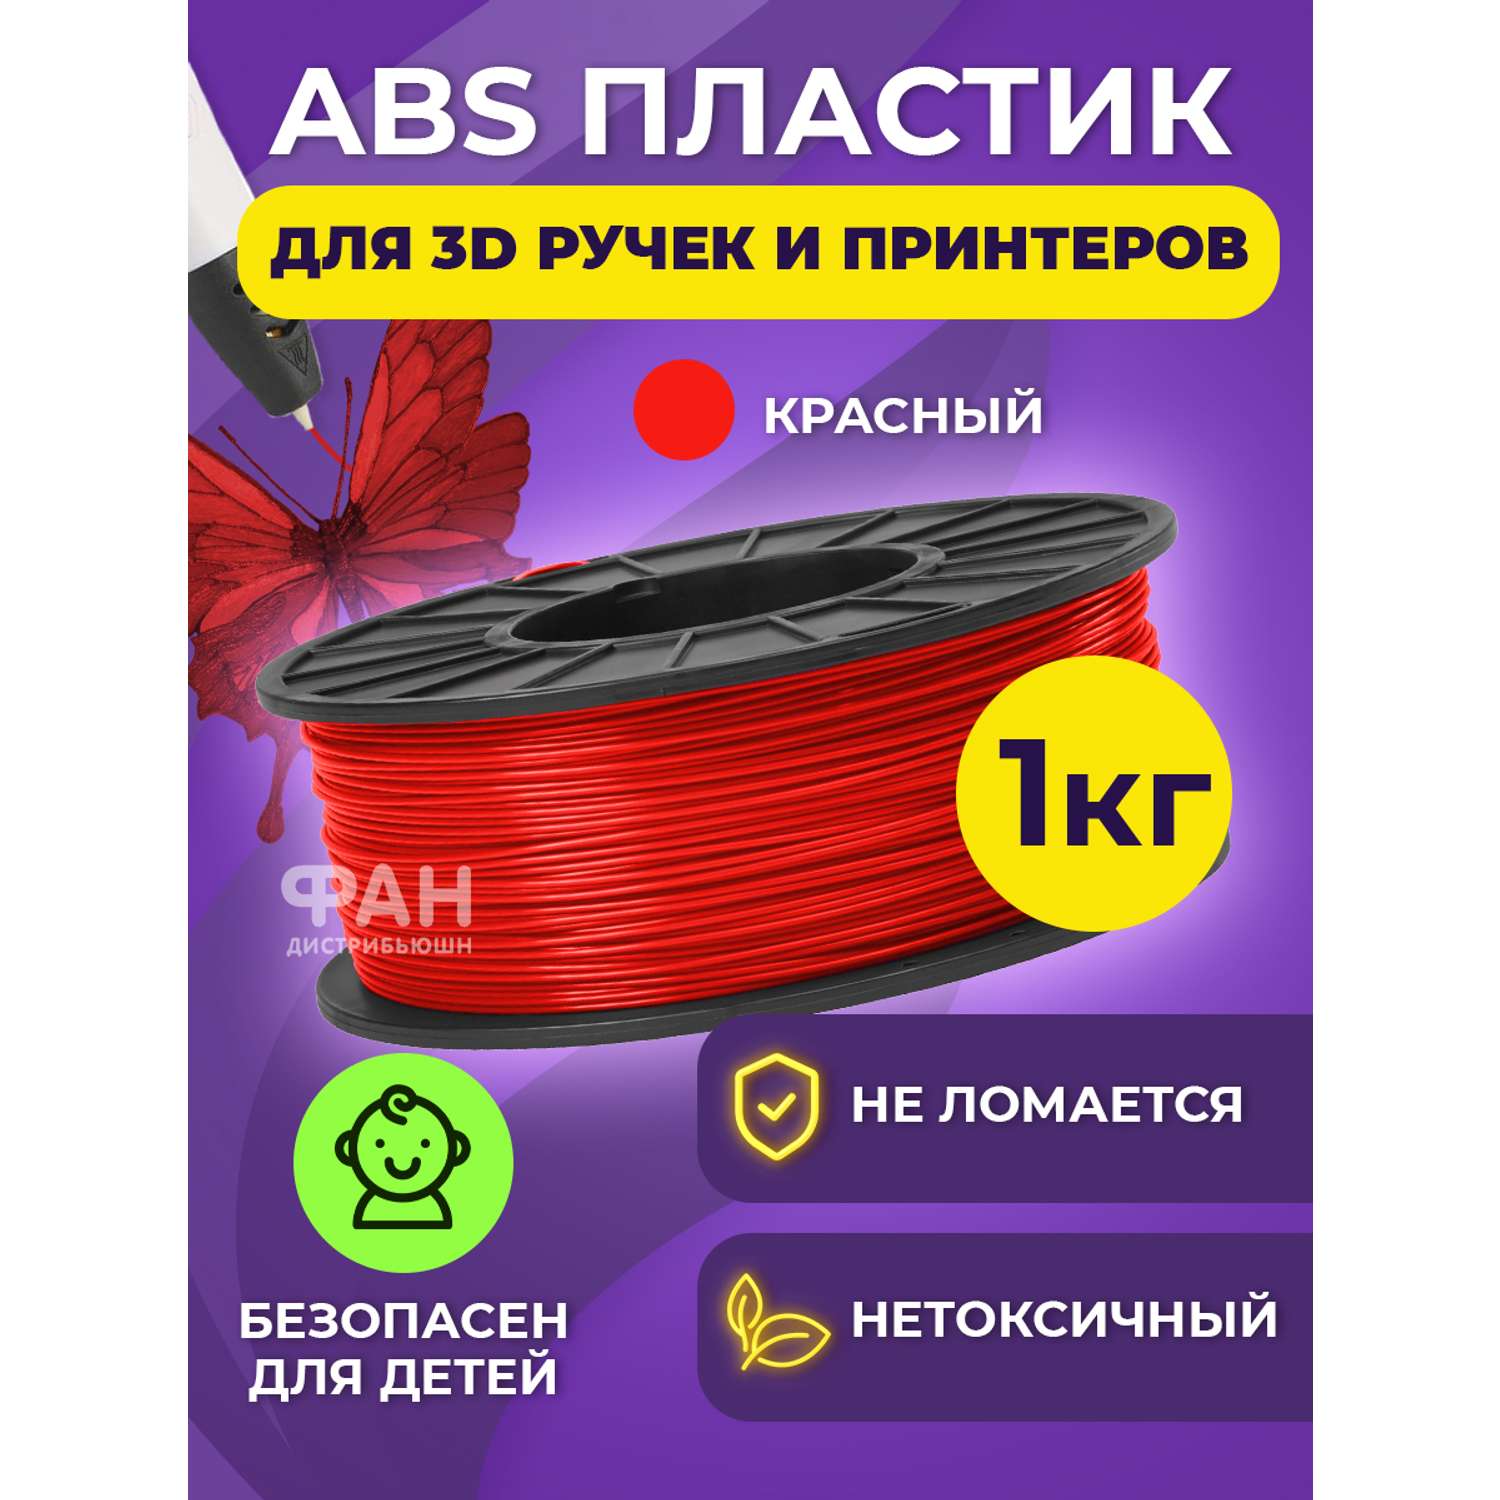 Пластик в катушке Funtasy ABS 1.75 мм 1 кг цвет красный - фото 2